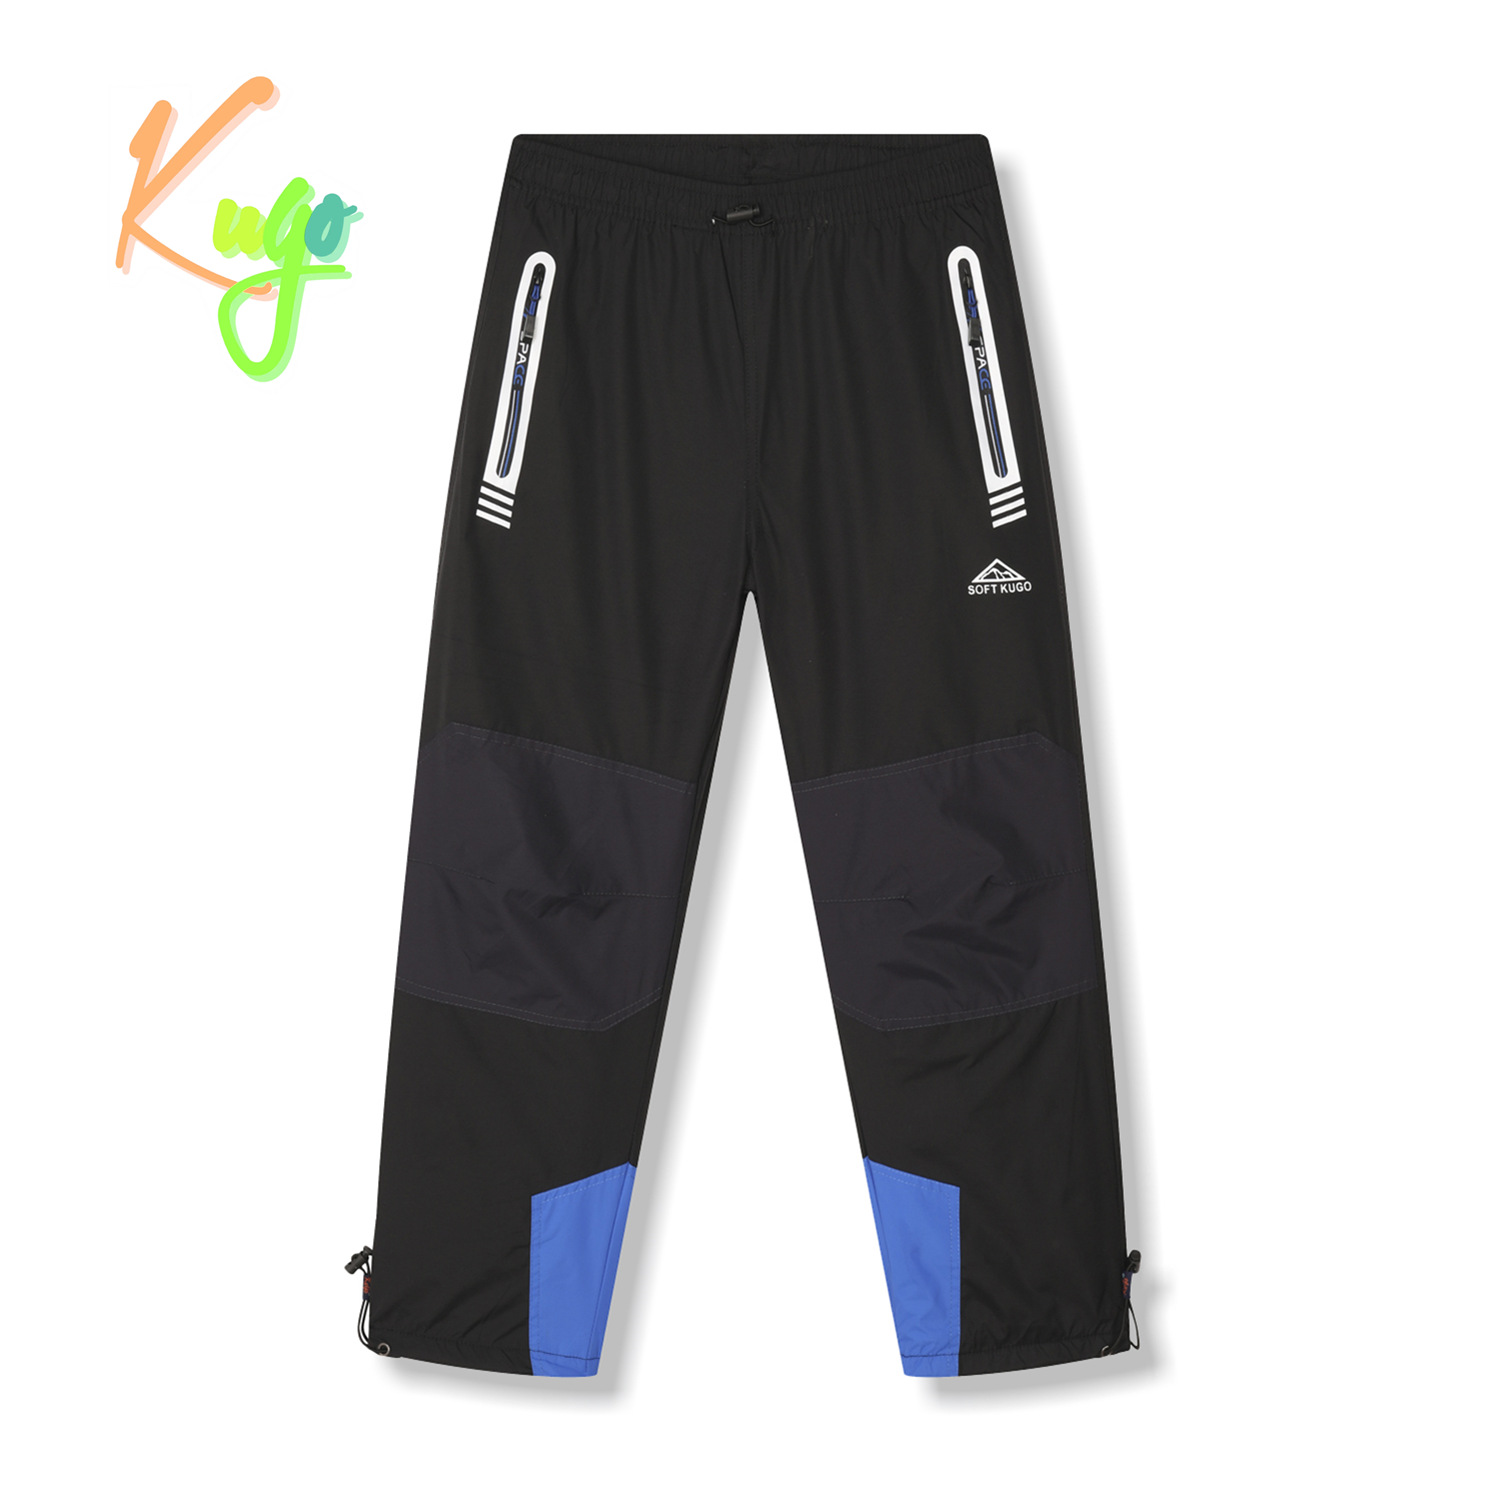 Chlapecké šusťákové kalhoty, zateplené - KUGO DK7135, černá/ modrá aplikace Barva: Černá, Velikost: 146